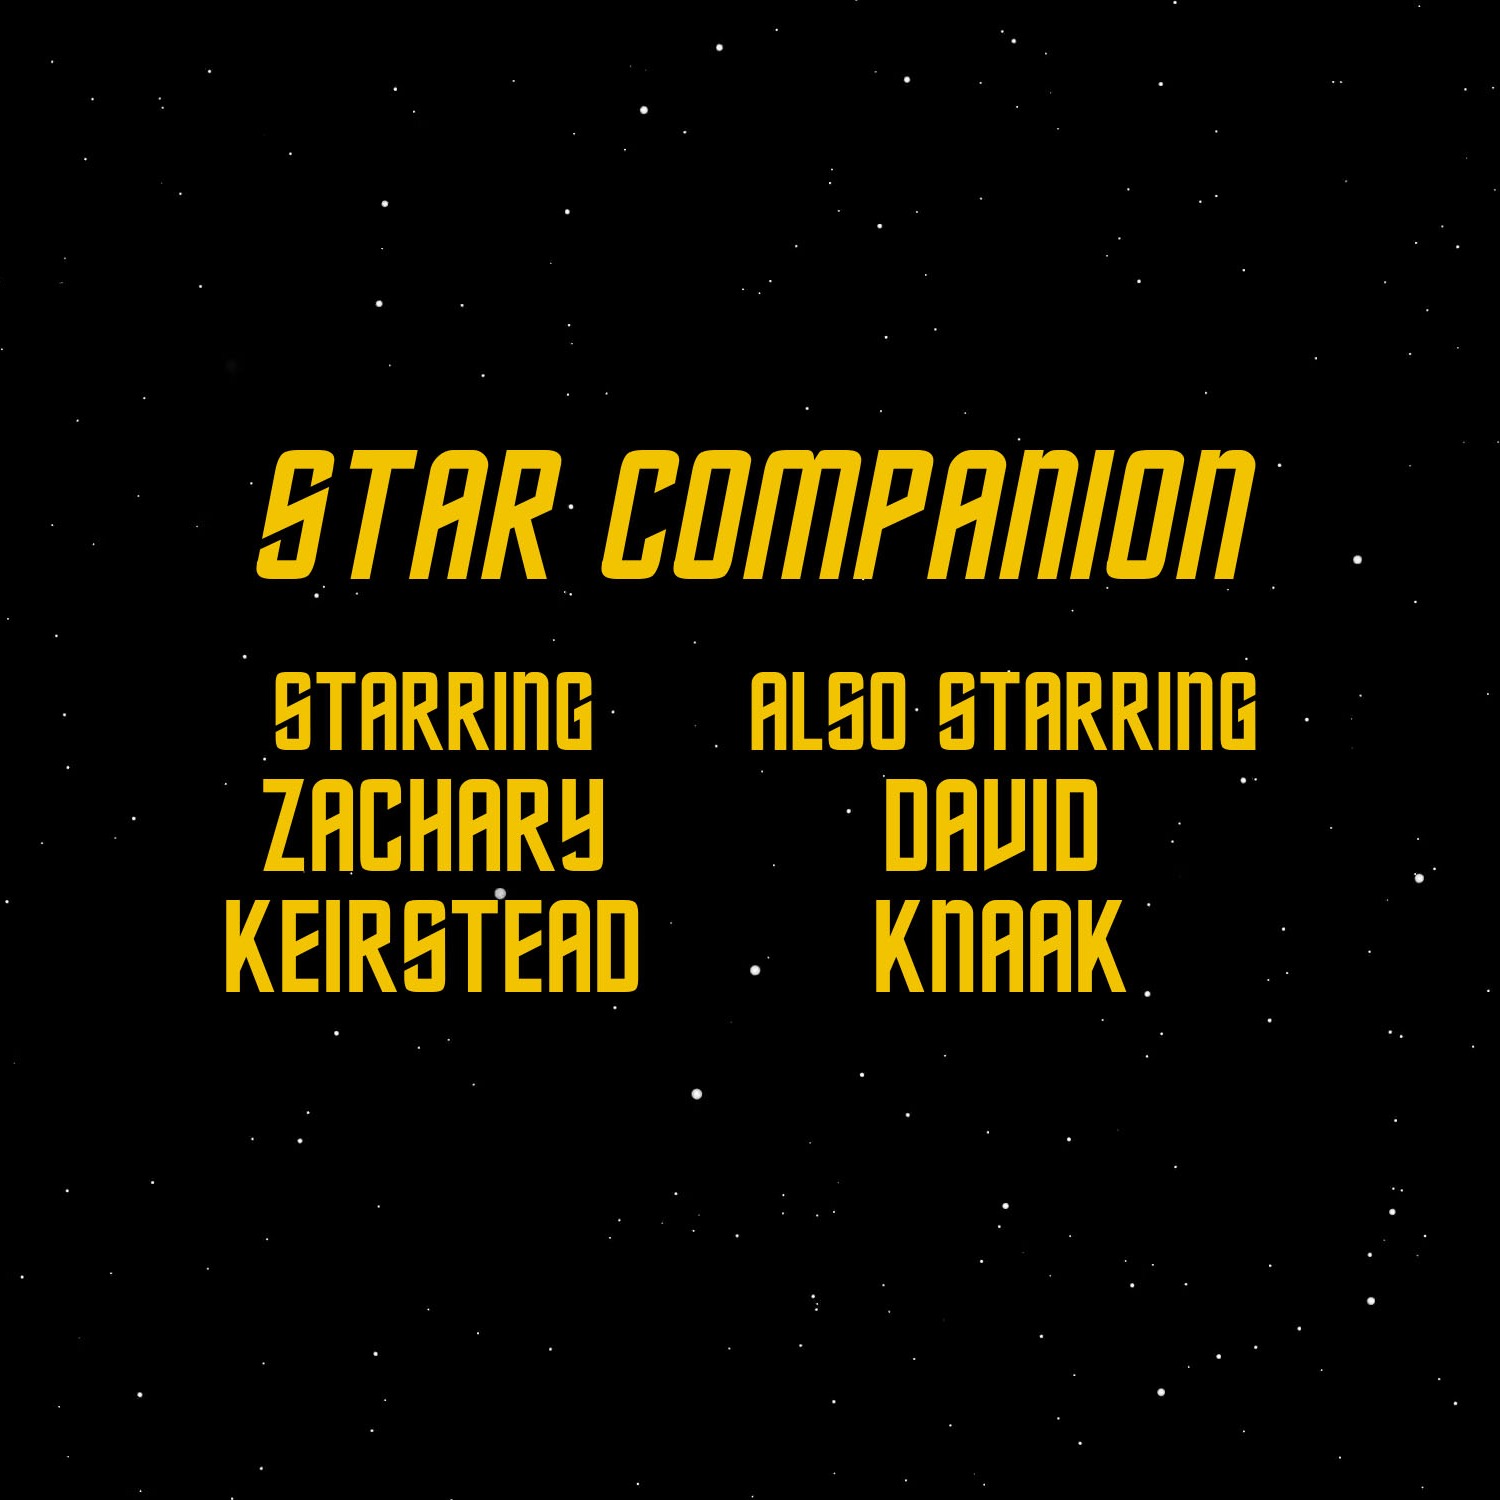 cover art for Star Trek Enterprise: Episode 13 "Dear Doctor"